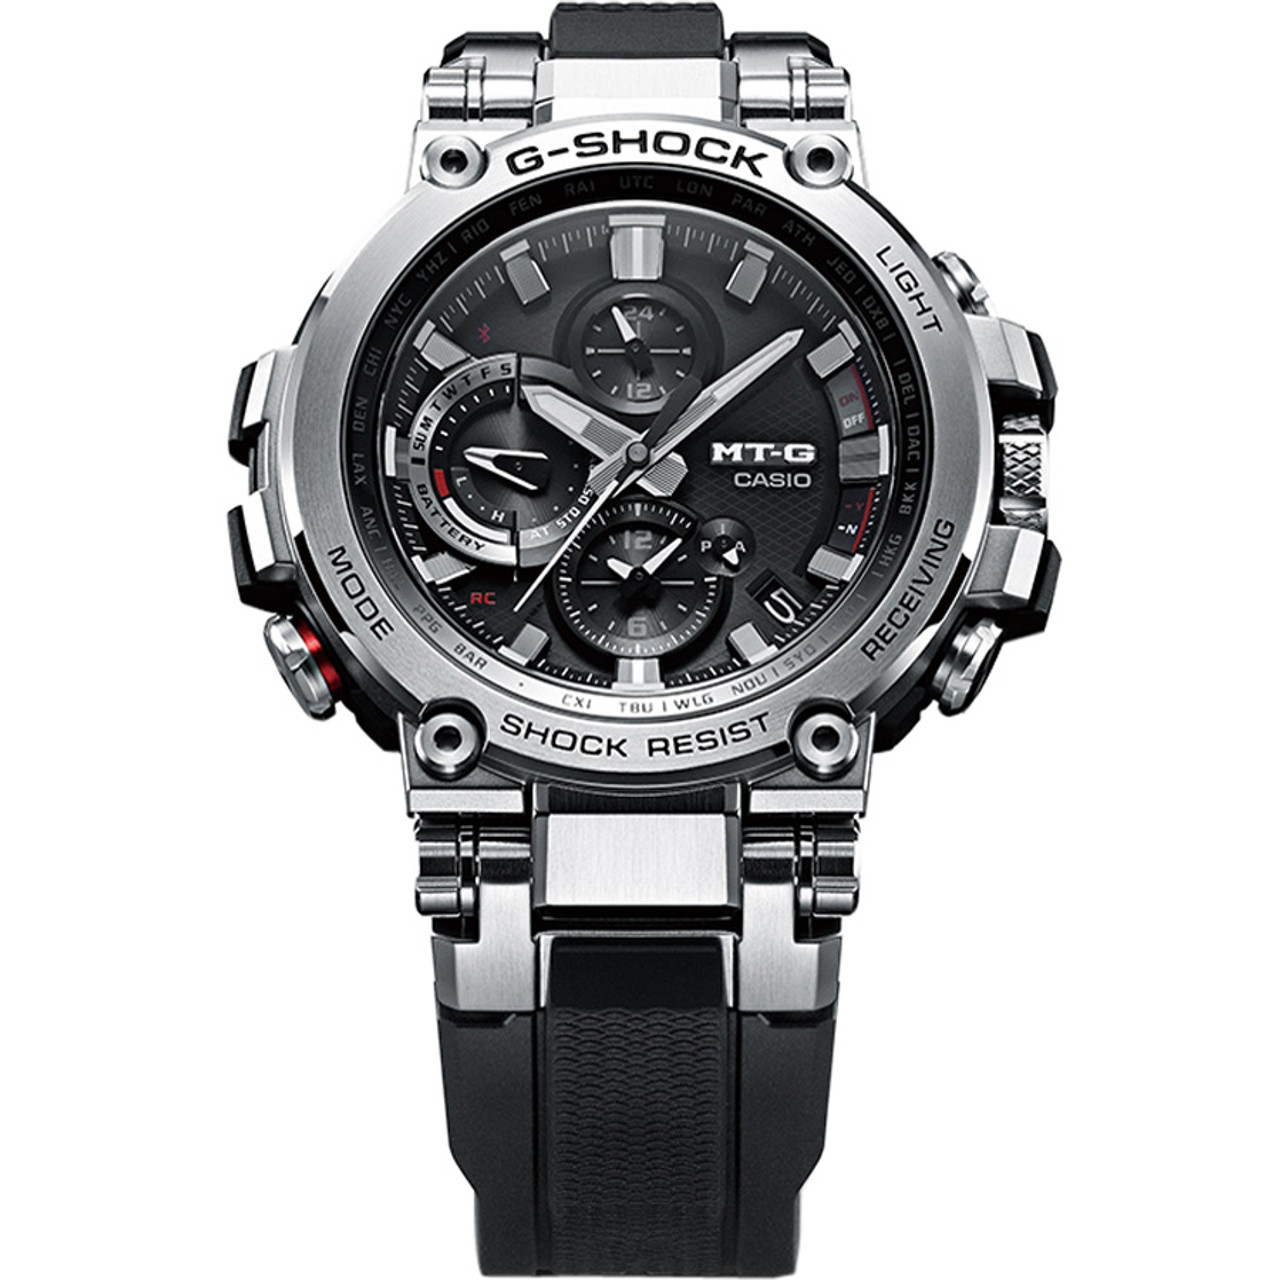 Casio G-Shock MT-G Bluetooth Radio Controlled Tough Solar Watch MTG ...